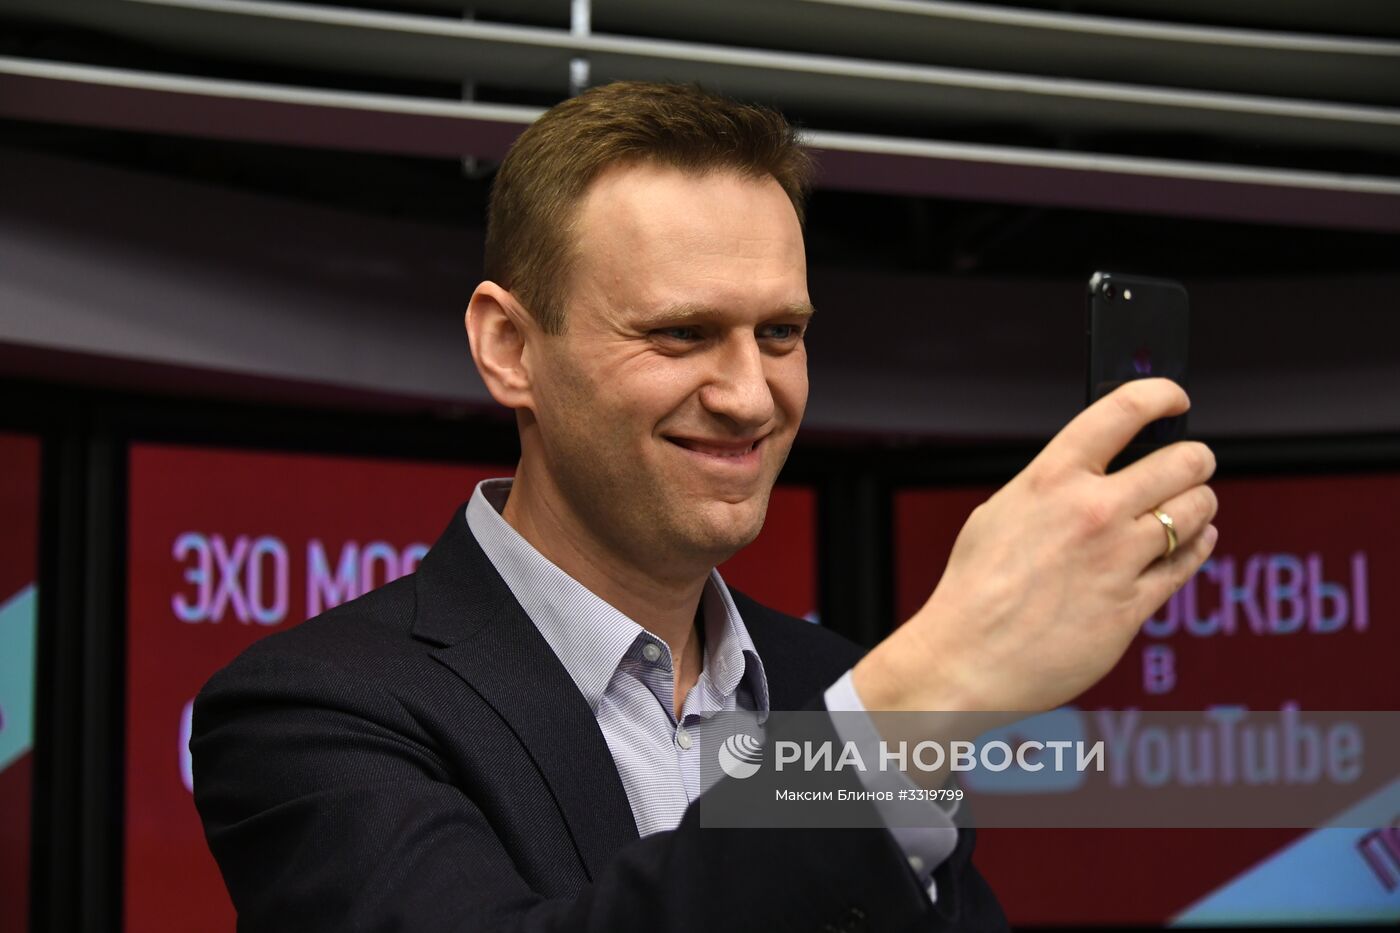 Алексей Навальный выступил в эфире радиостанции "Эхо Москвы"